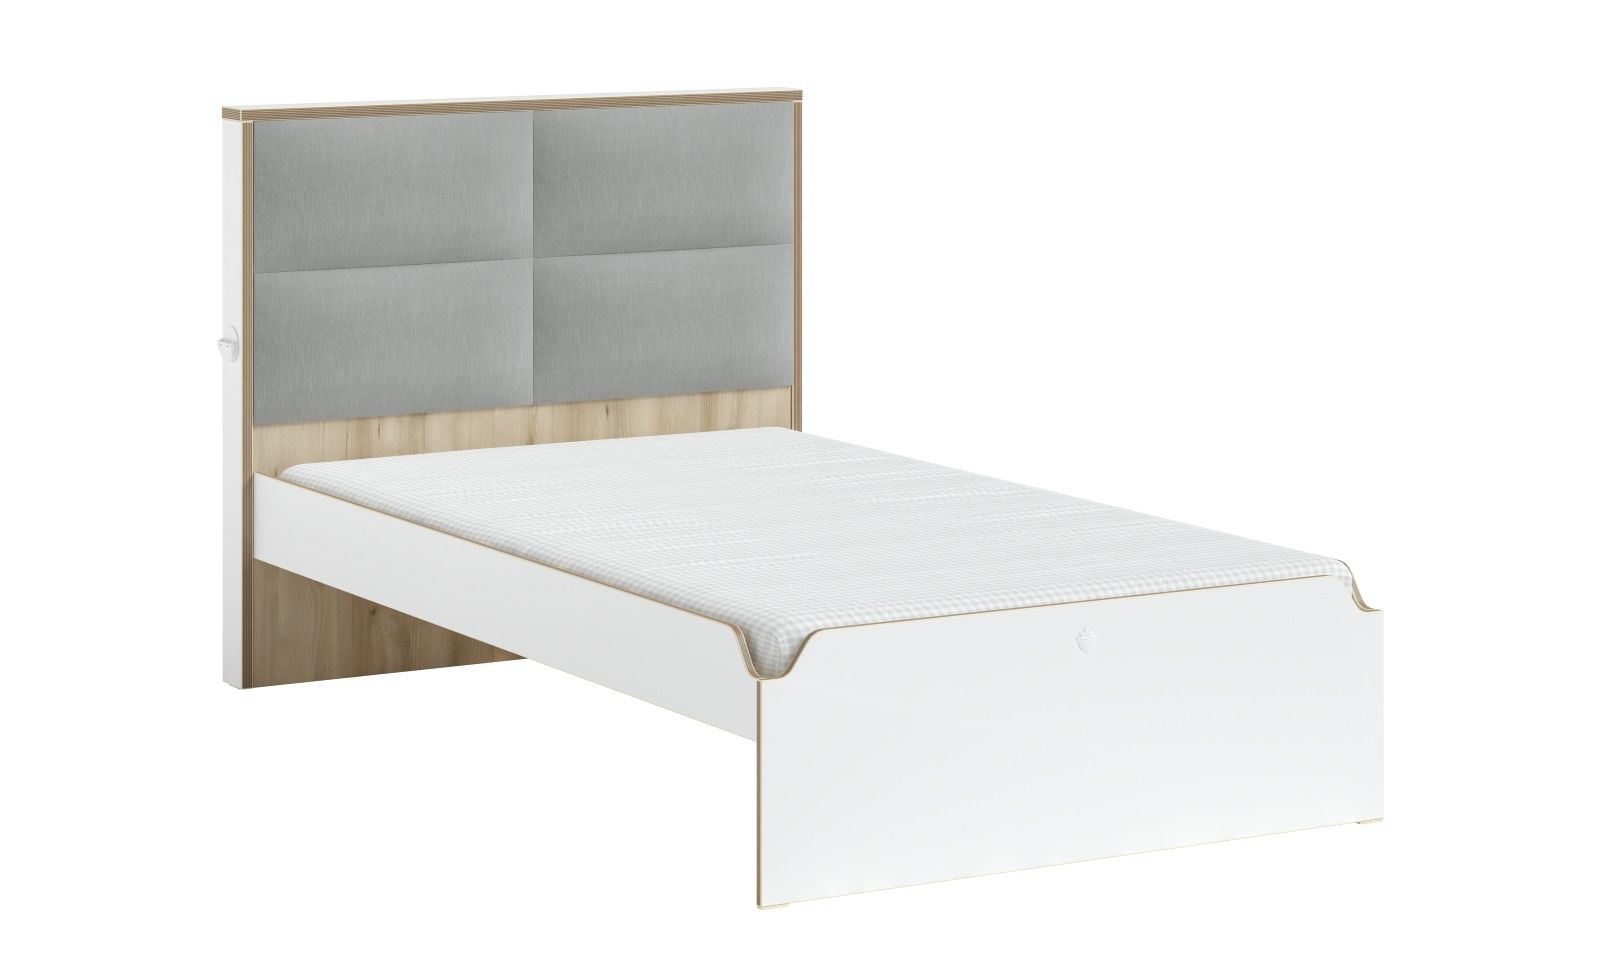 Studentská postel s čalouněným čelem 120x200cm Dylan - bílá/dub světlý - Nábytek Harmonia s.r.o.